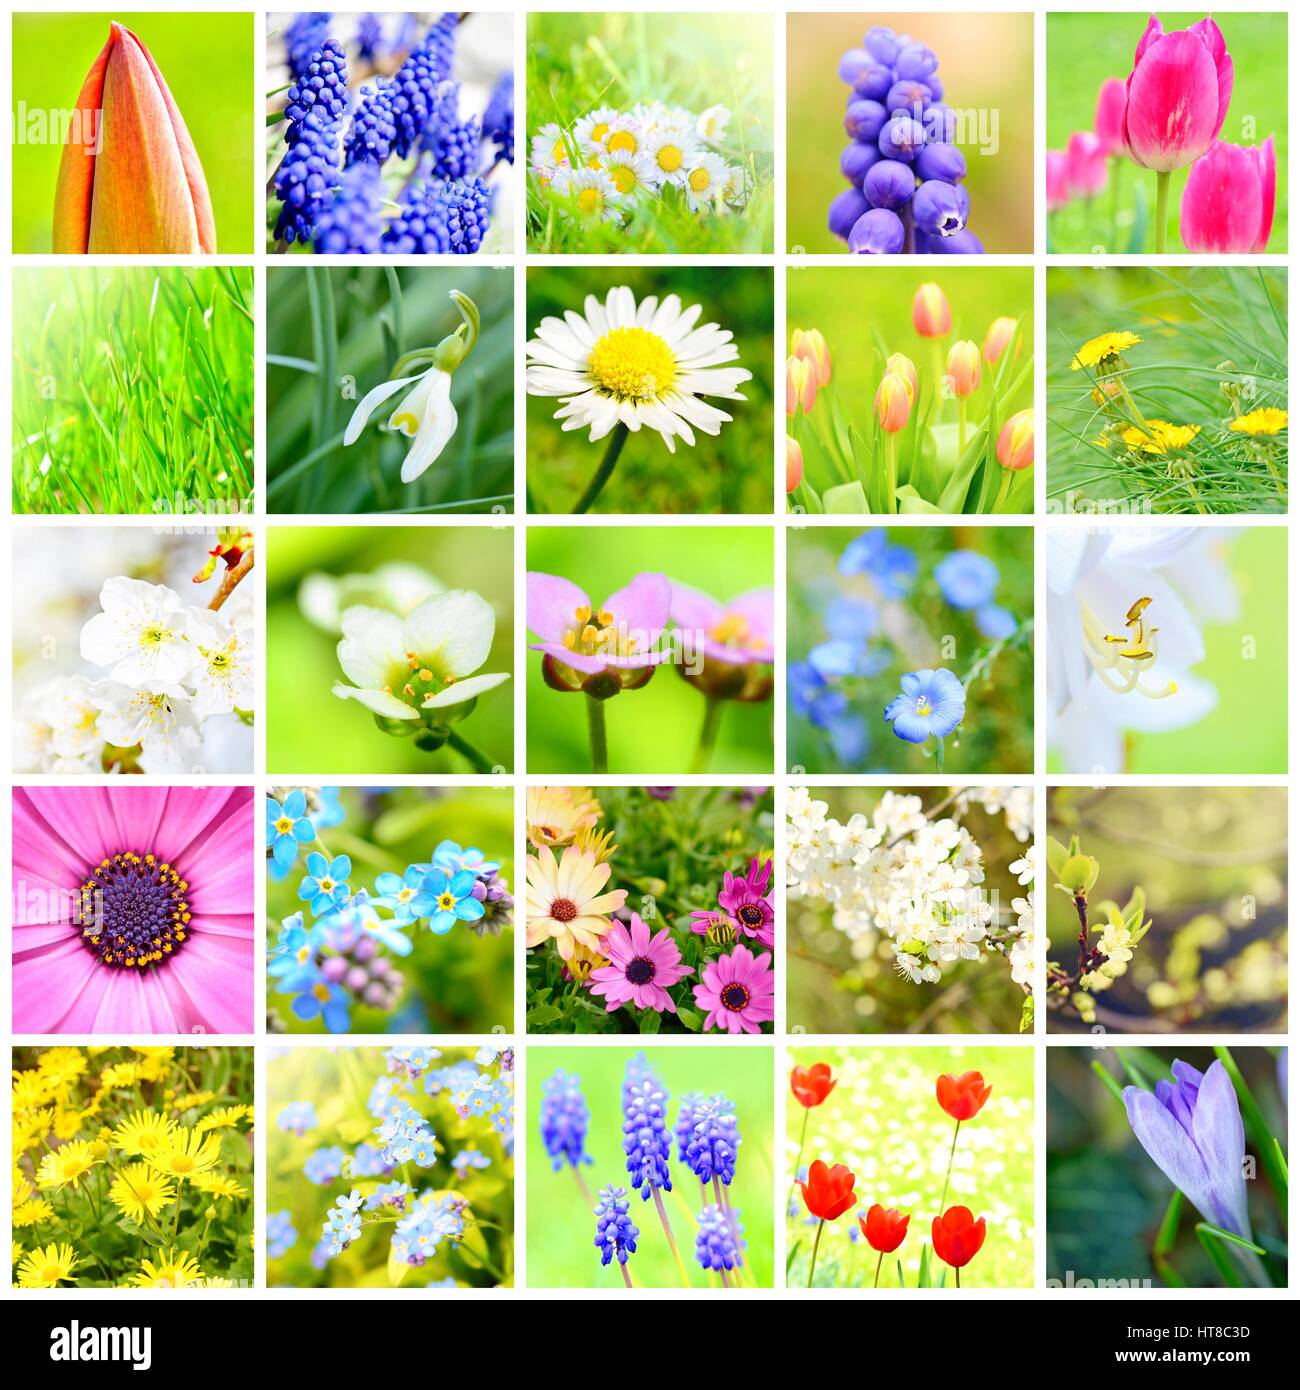 Frühling Blumen Collage mit Bildern von Pflanzen und Blumen im Garten. Stockfoto